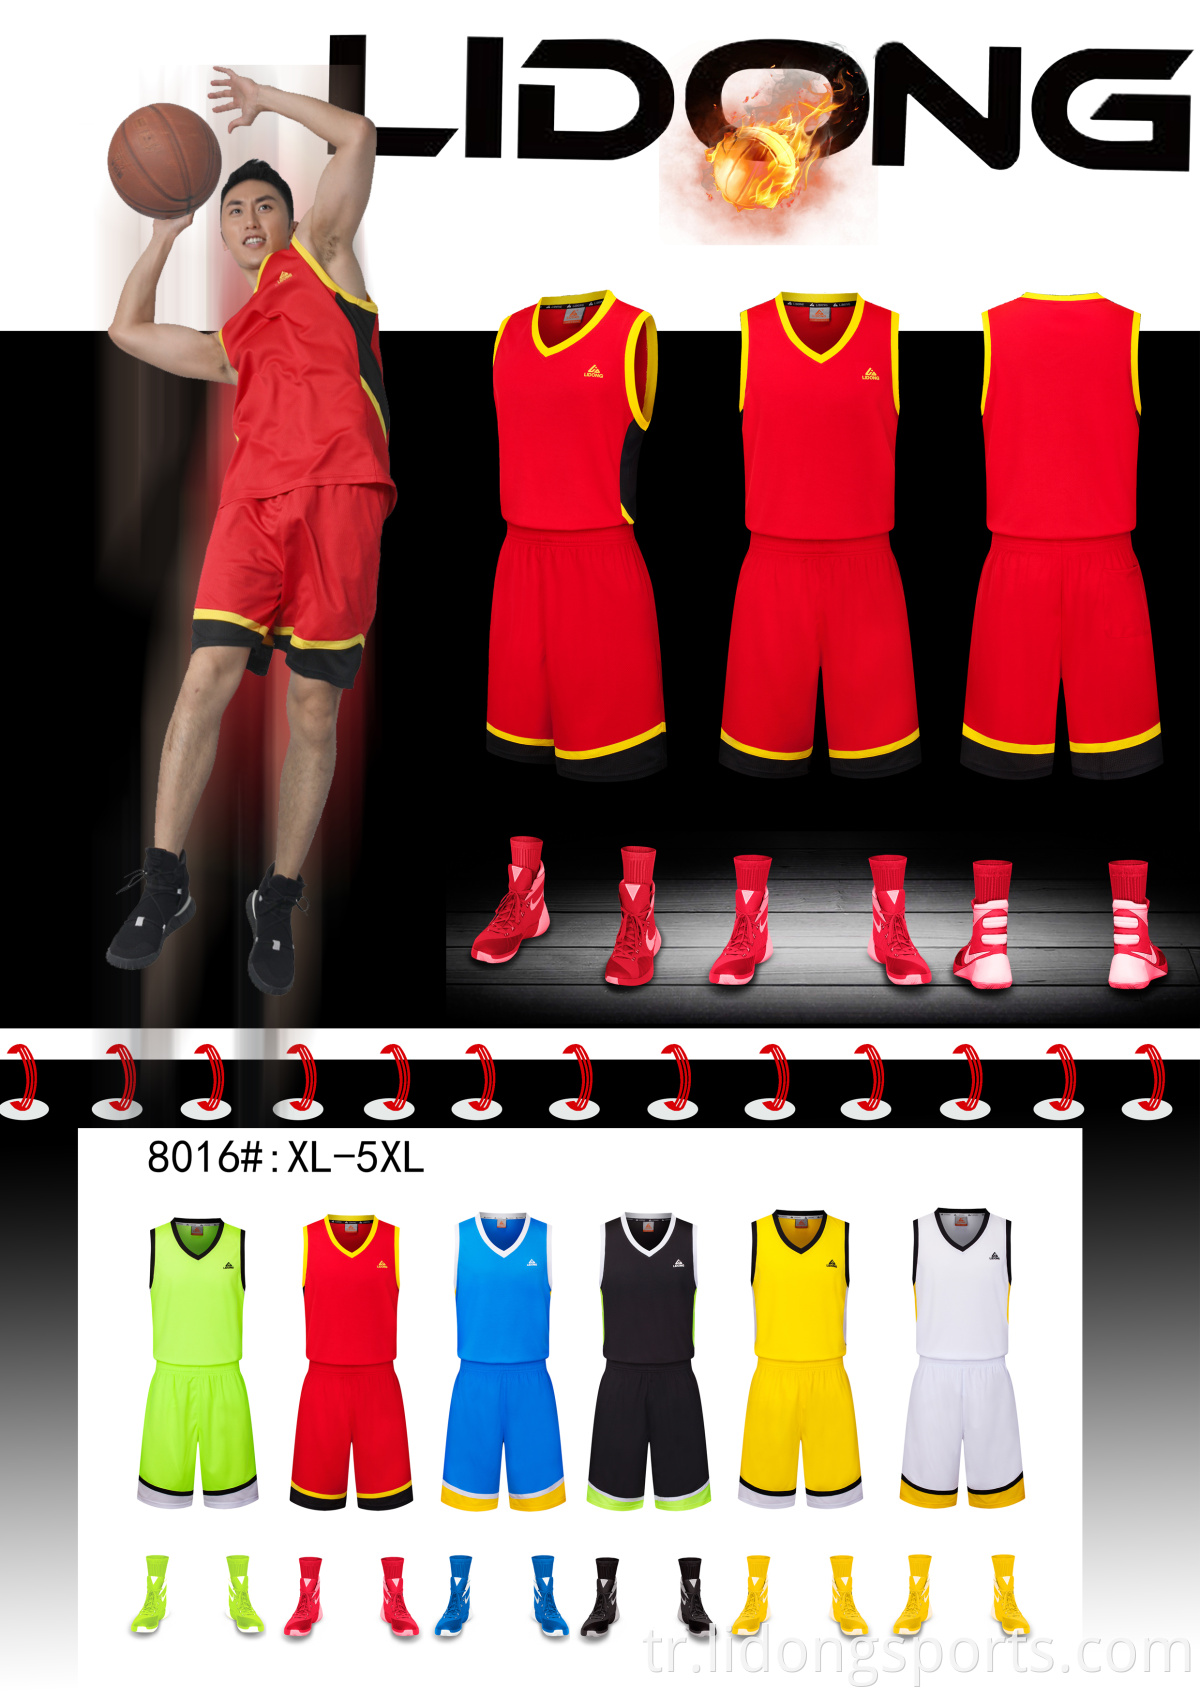 Basketbol Formaları Gençlik Modası En İyi Basketbol Forması Üniforma Tasarımını Özelleştir